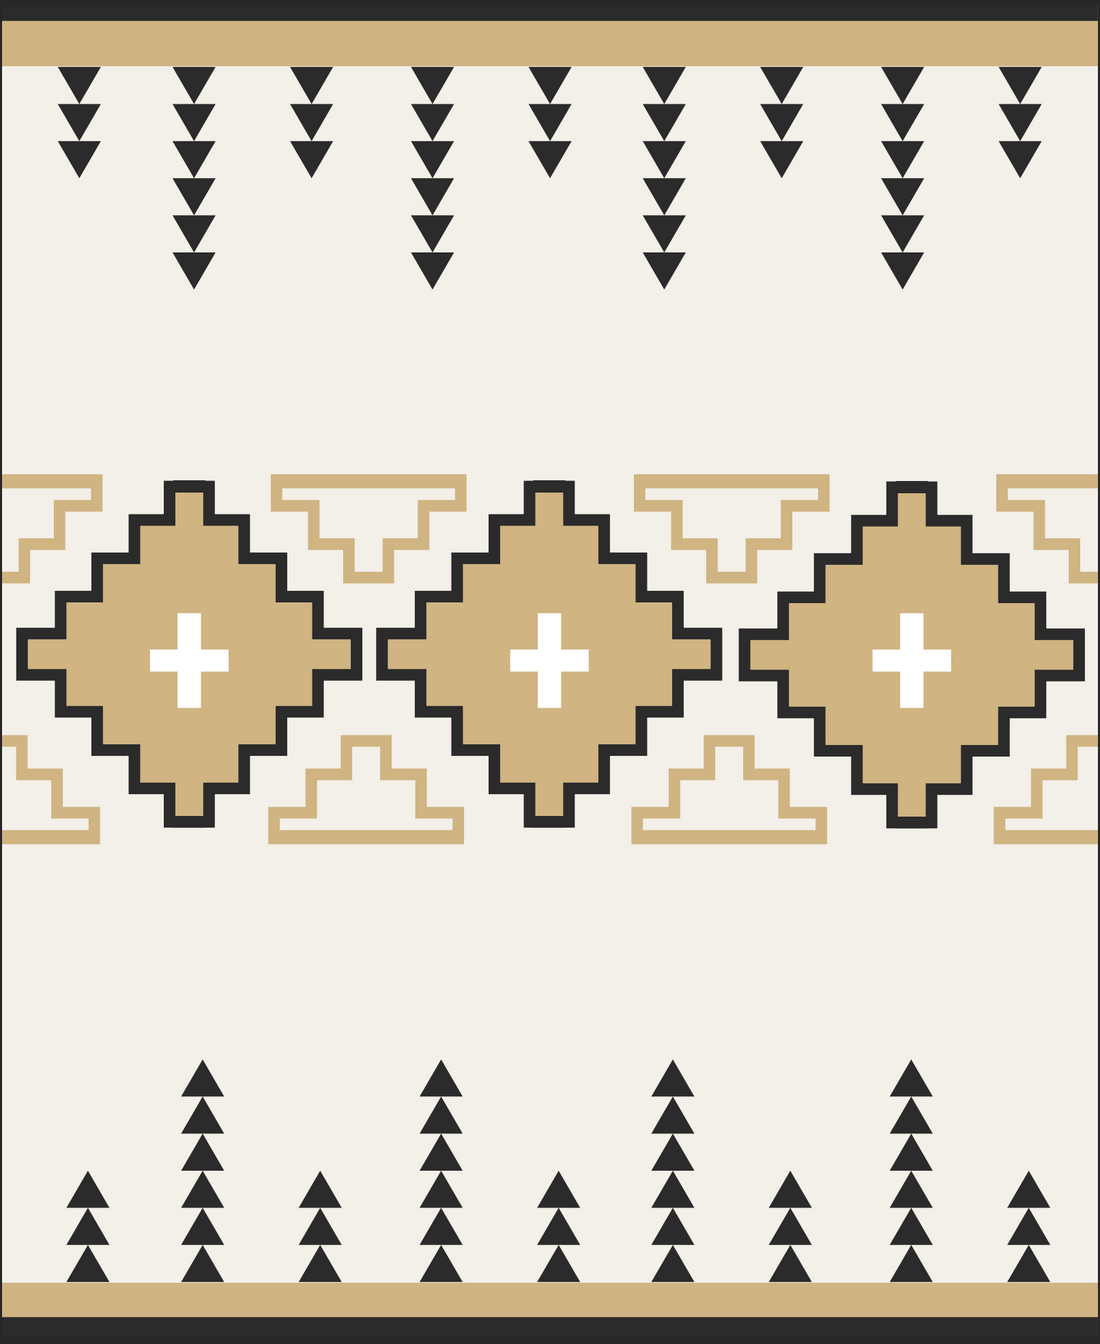 blanket pattern